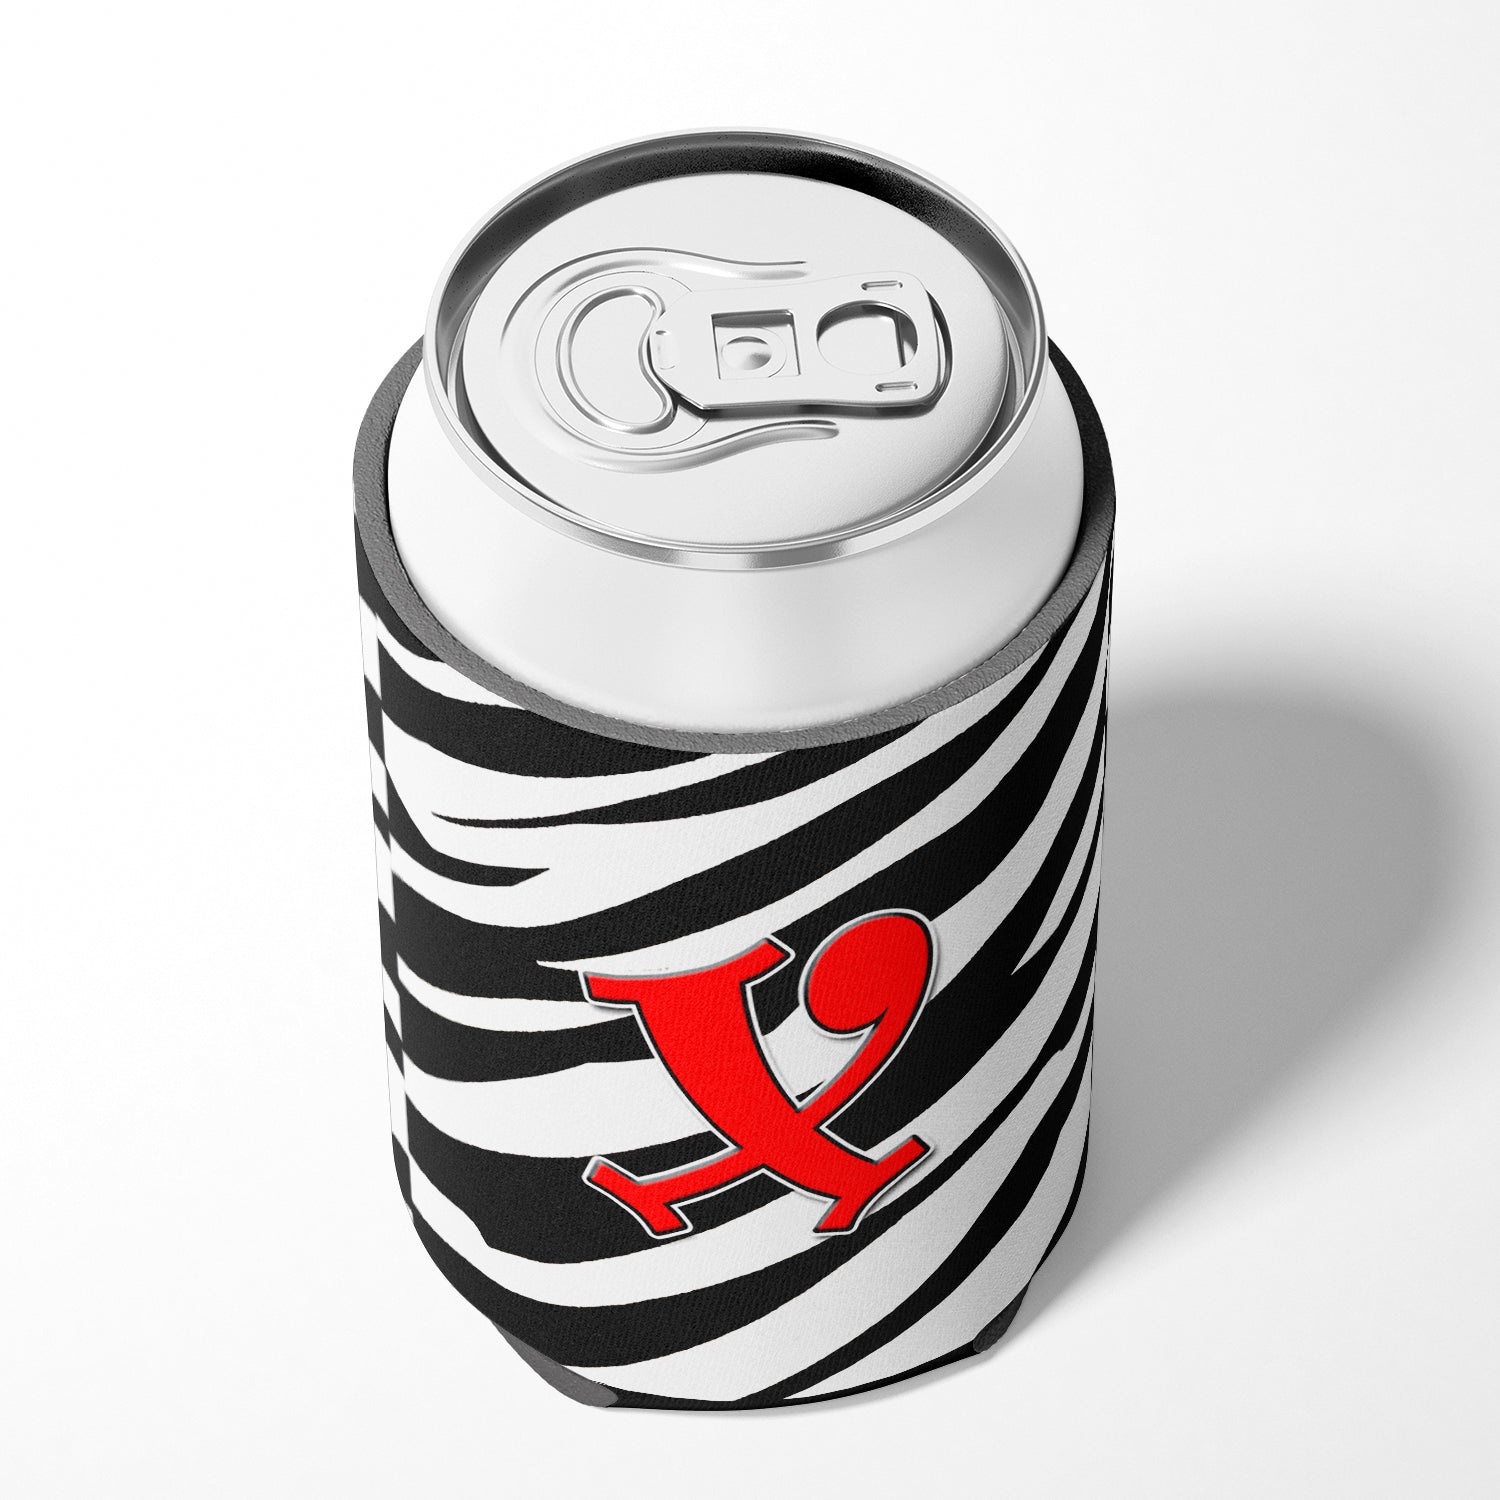 Letter X Initial Monogram - Zebra Red Can or Bottle Beverage Insulator Hugger.